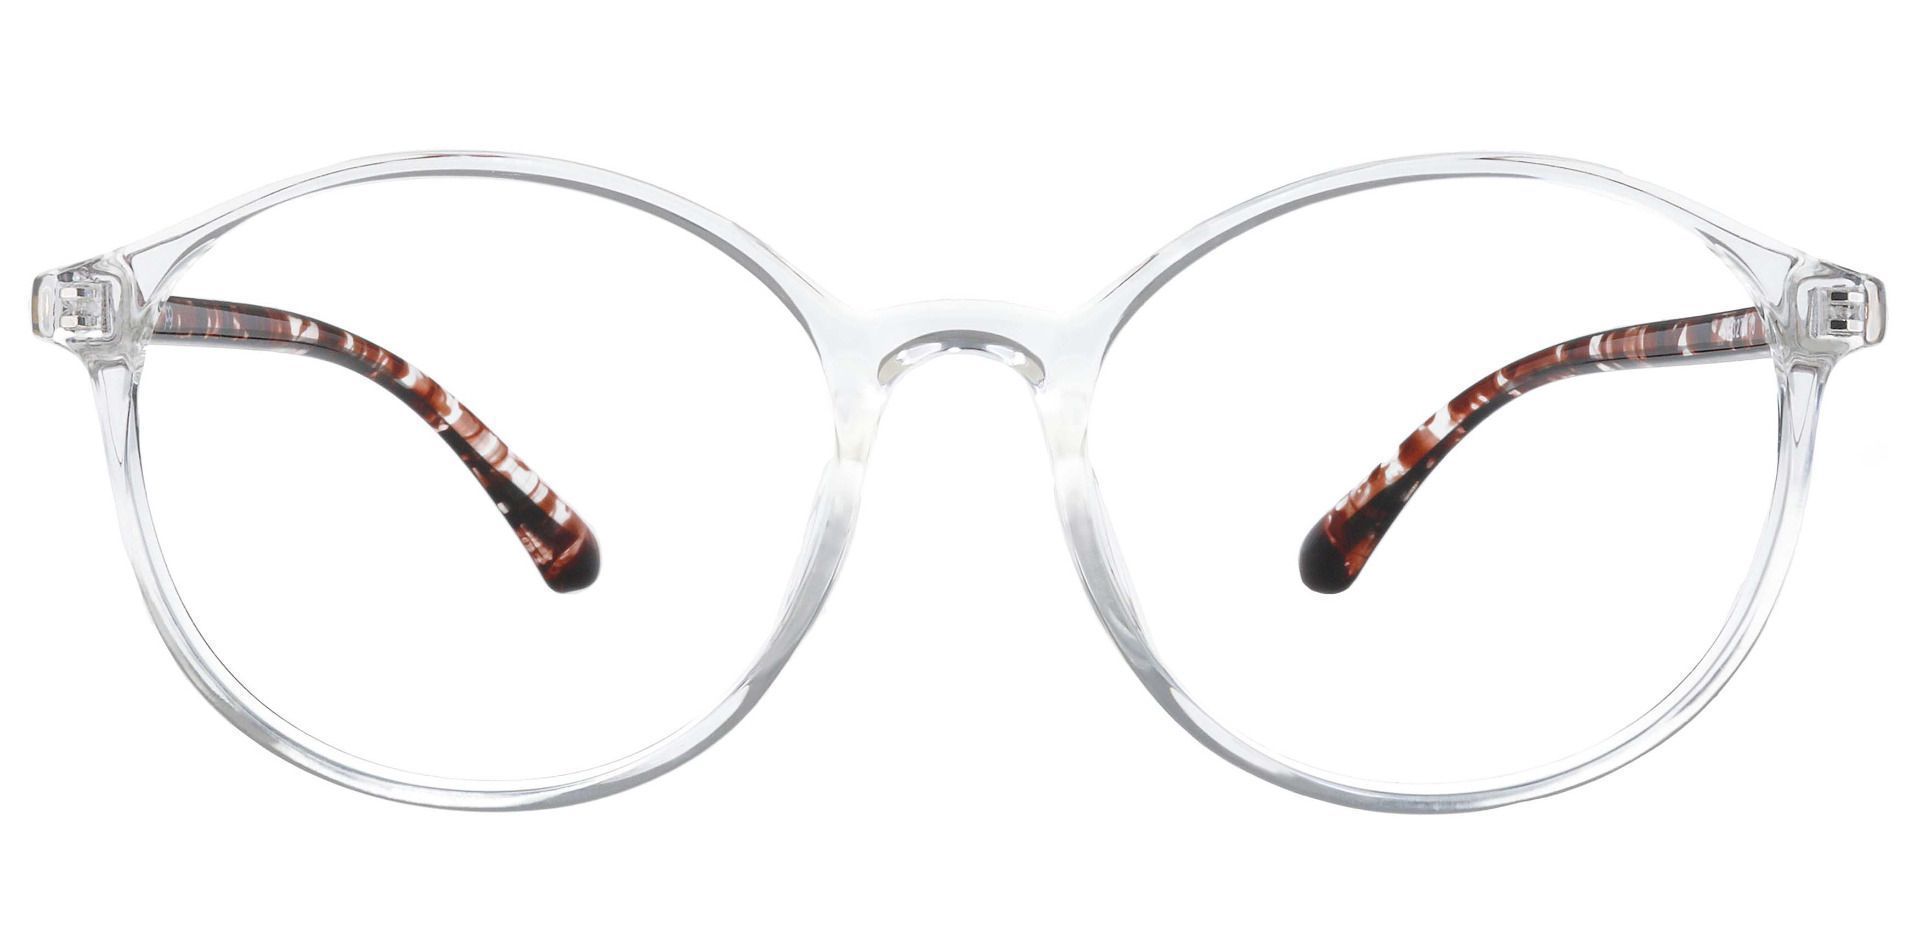 Zemi Round Prescription Glasses - Clear